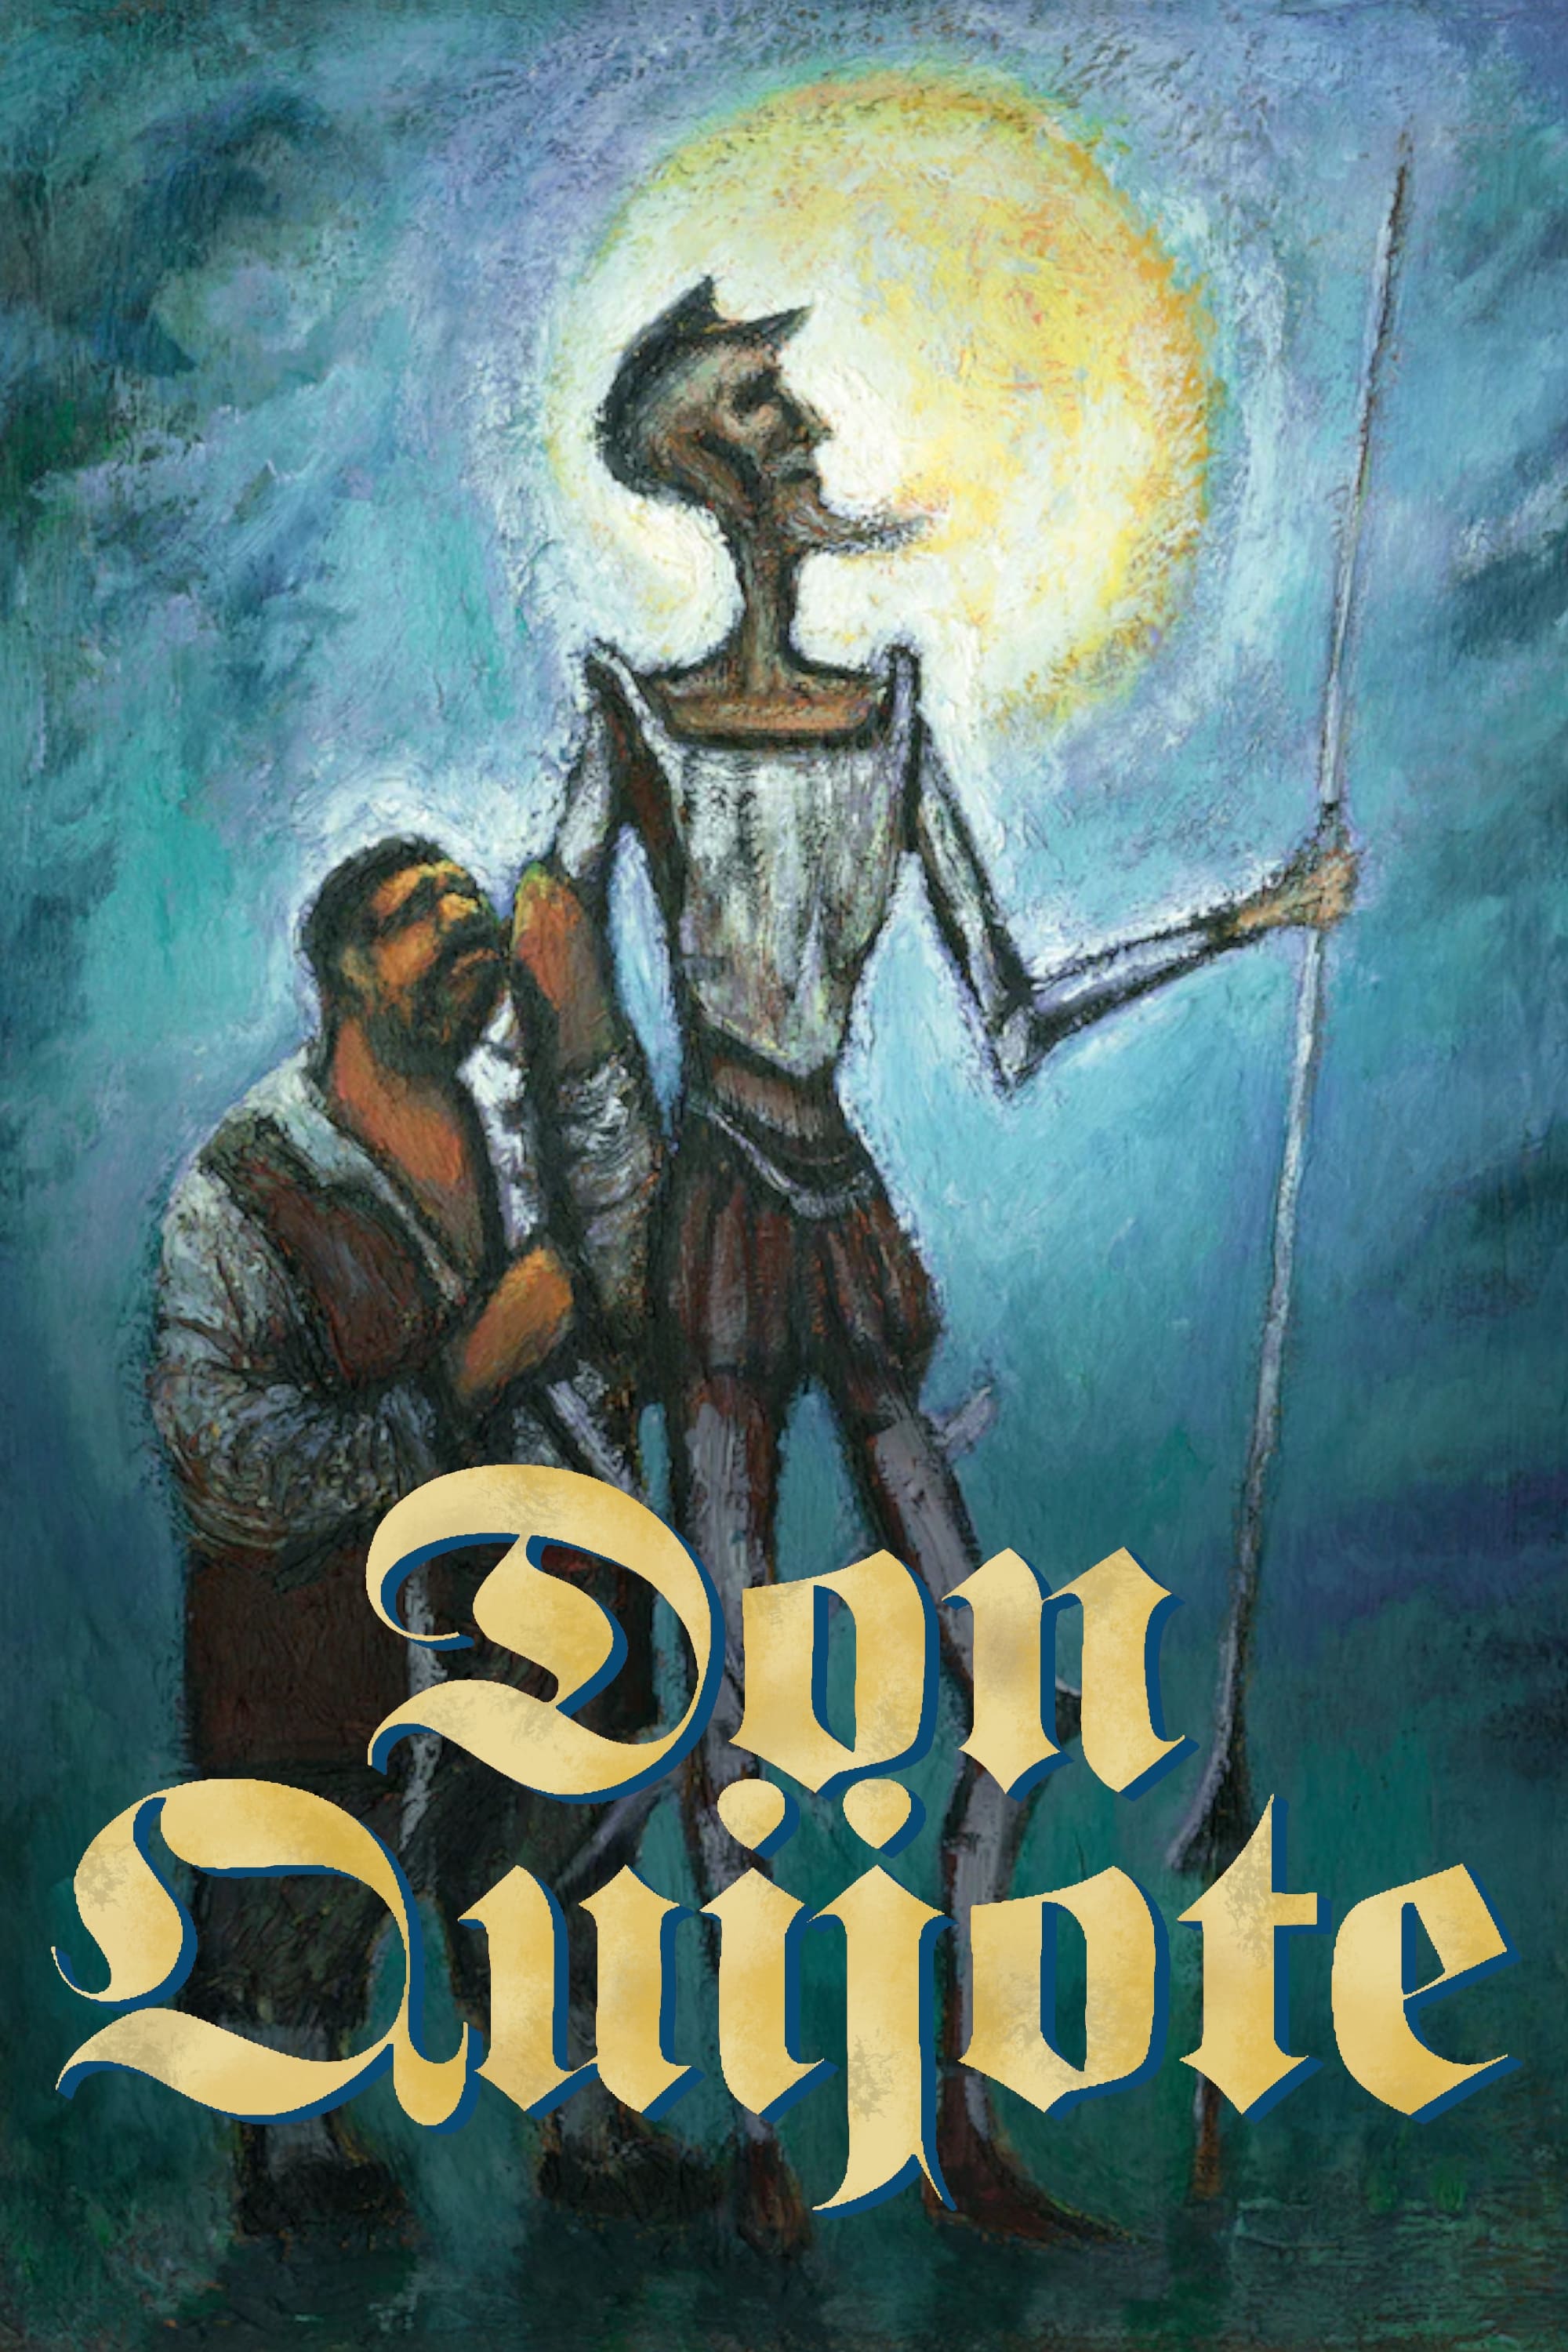 Don Quichotte (1992)